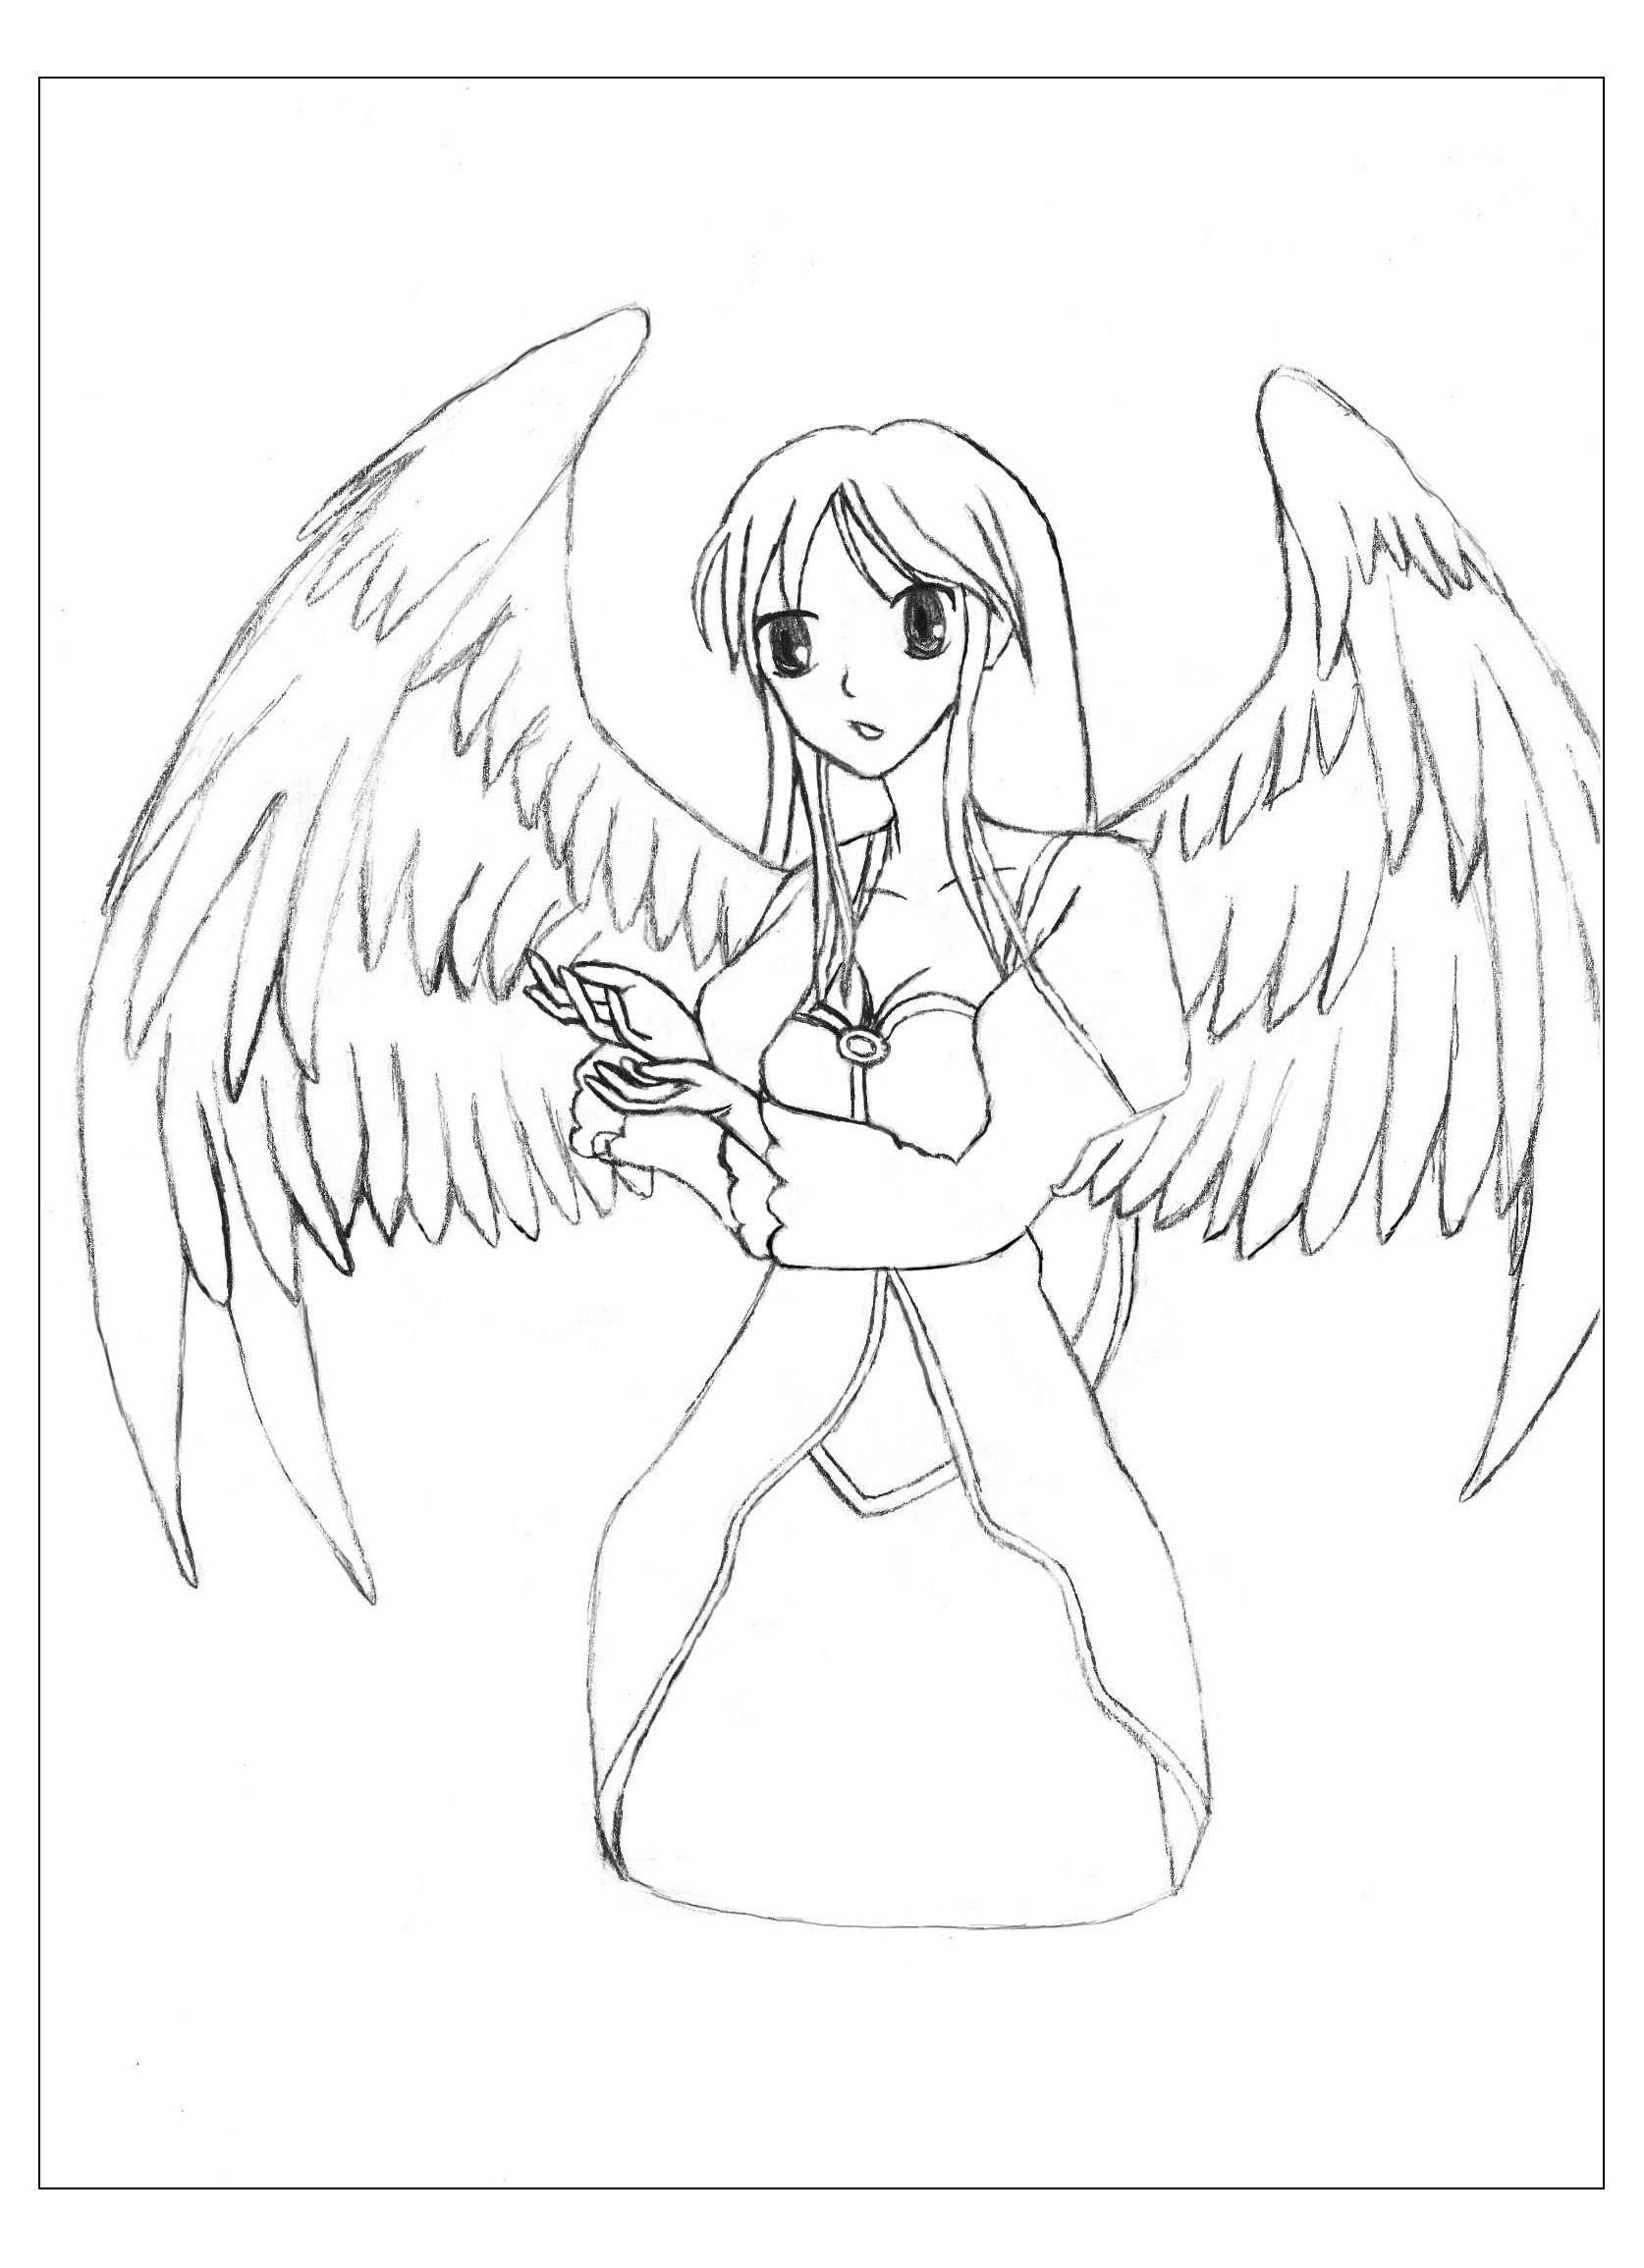 Un dessin original et exclusif de Krissy représentant un Ange !